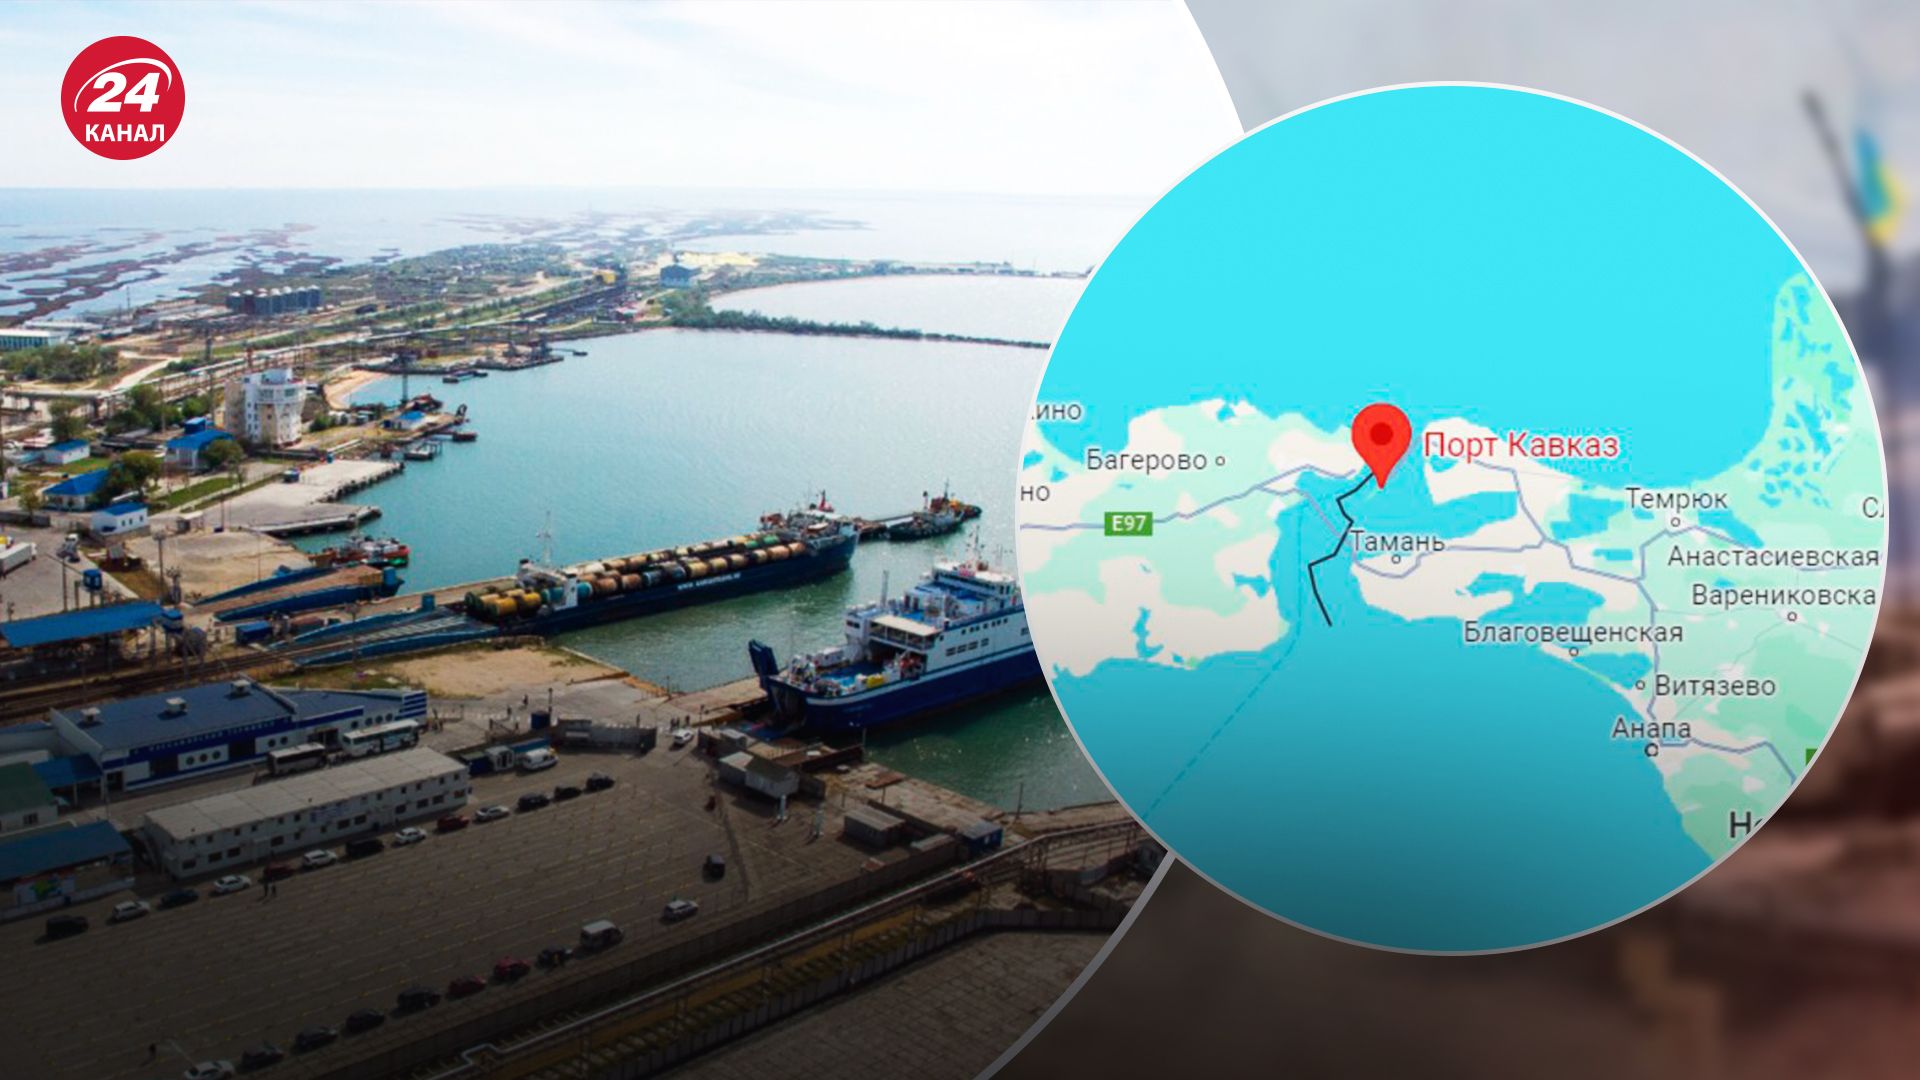 БпЛА атакували пором в Краснодарському краї: показуємо на карті, де розташований порт "Кавказ" - 24 Канал